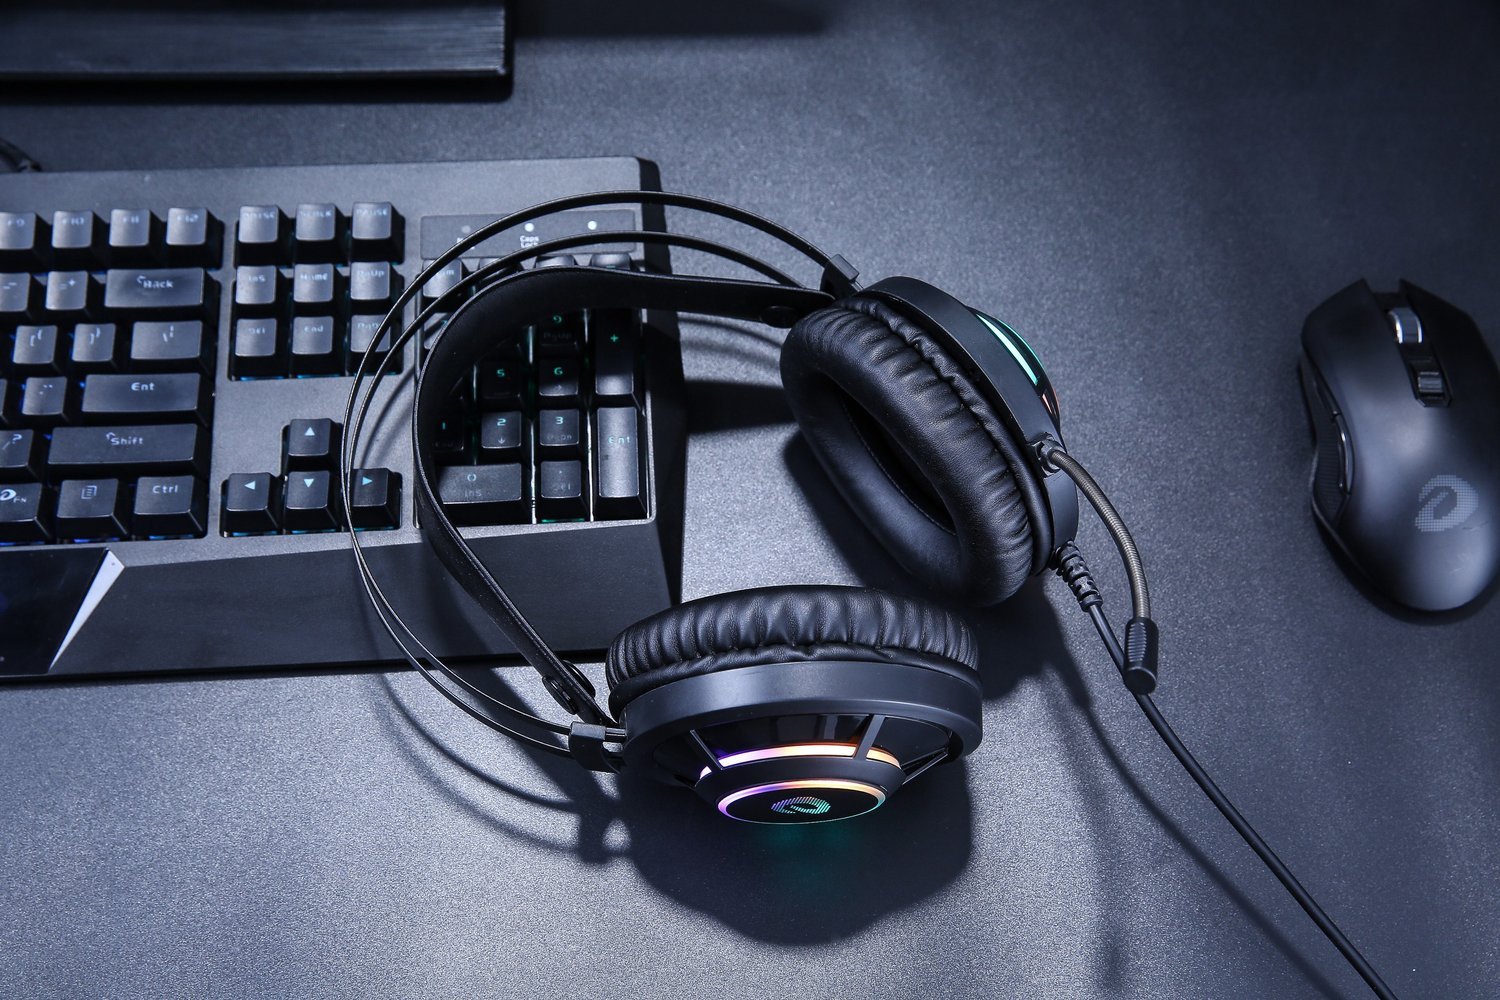 Gamer Fejhallgató Dareu EH469, Mikrofon, RGB fény, 2,5 m kábel, USB csatlakozás